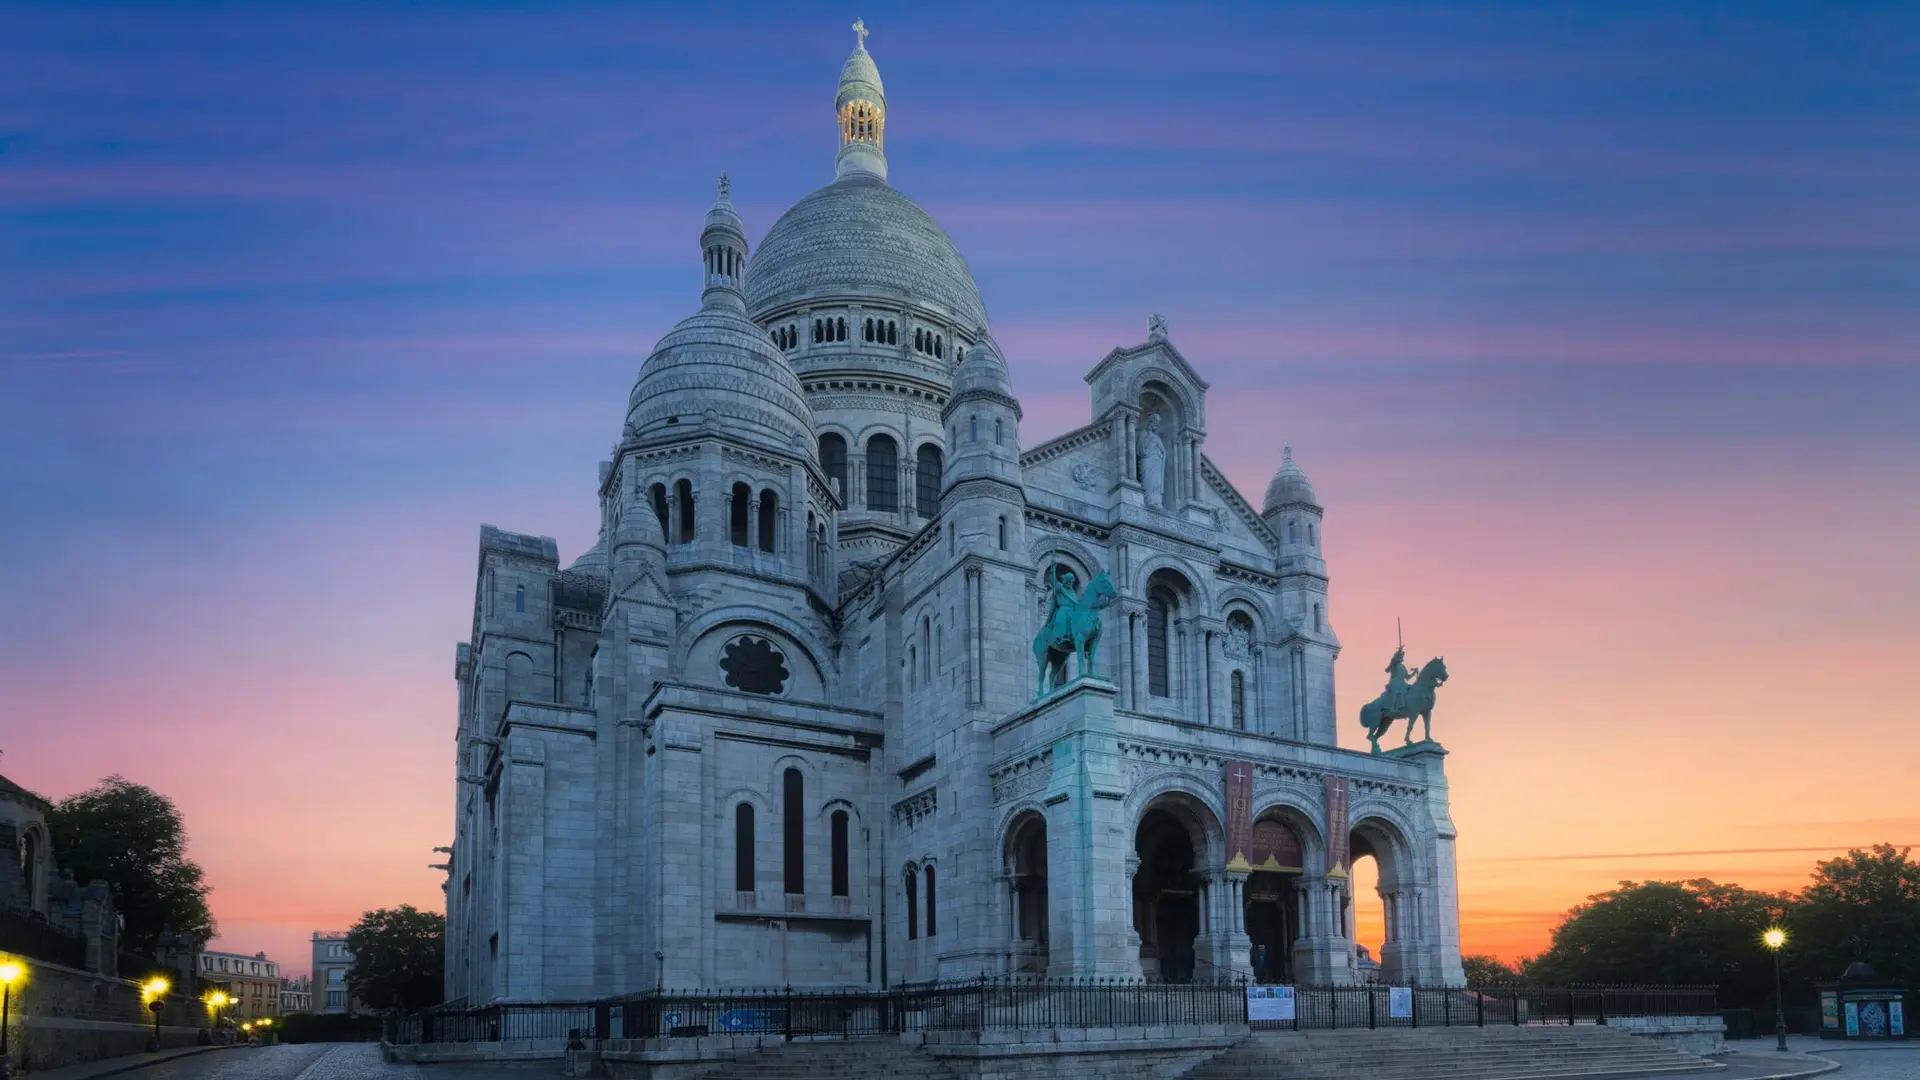 Destinations Articles - Paris Travel Guide